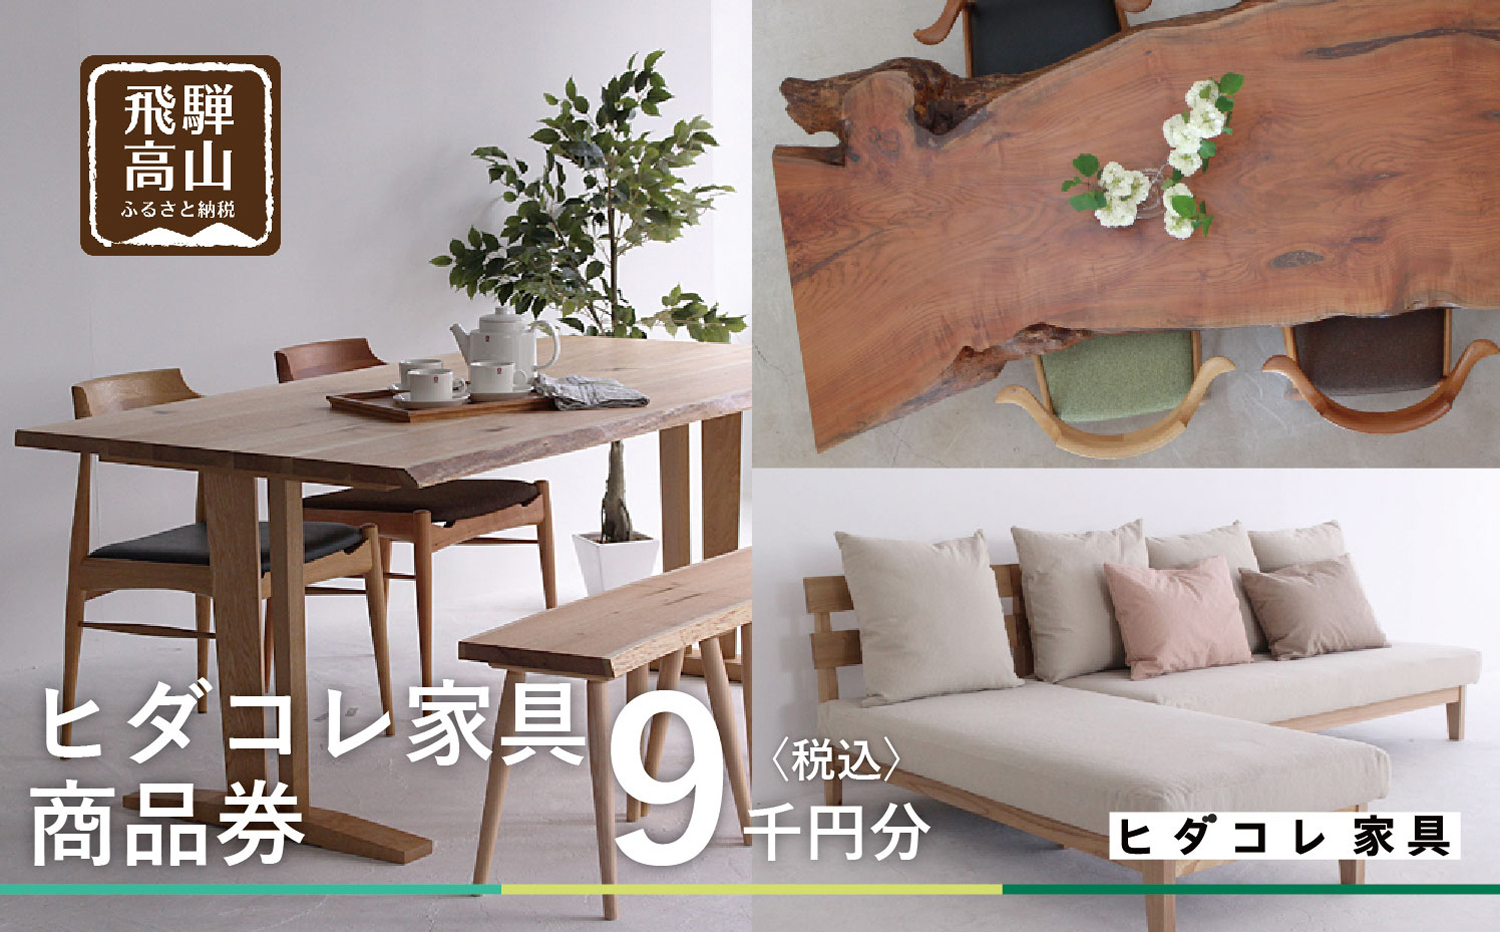 オーダー家具 利用券 9千円分の商品画像です。